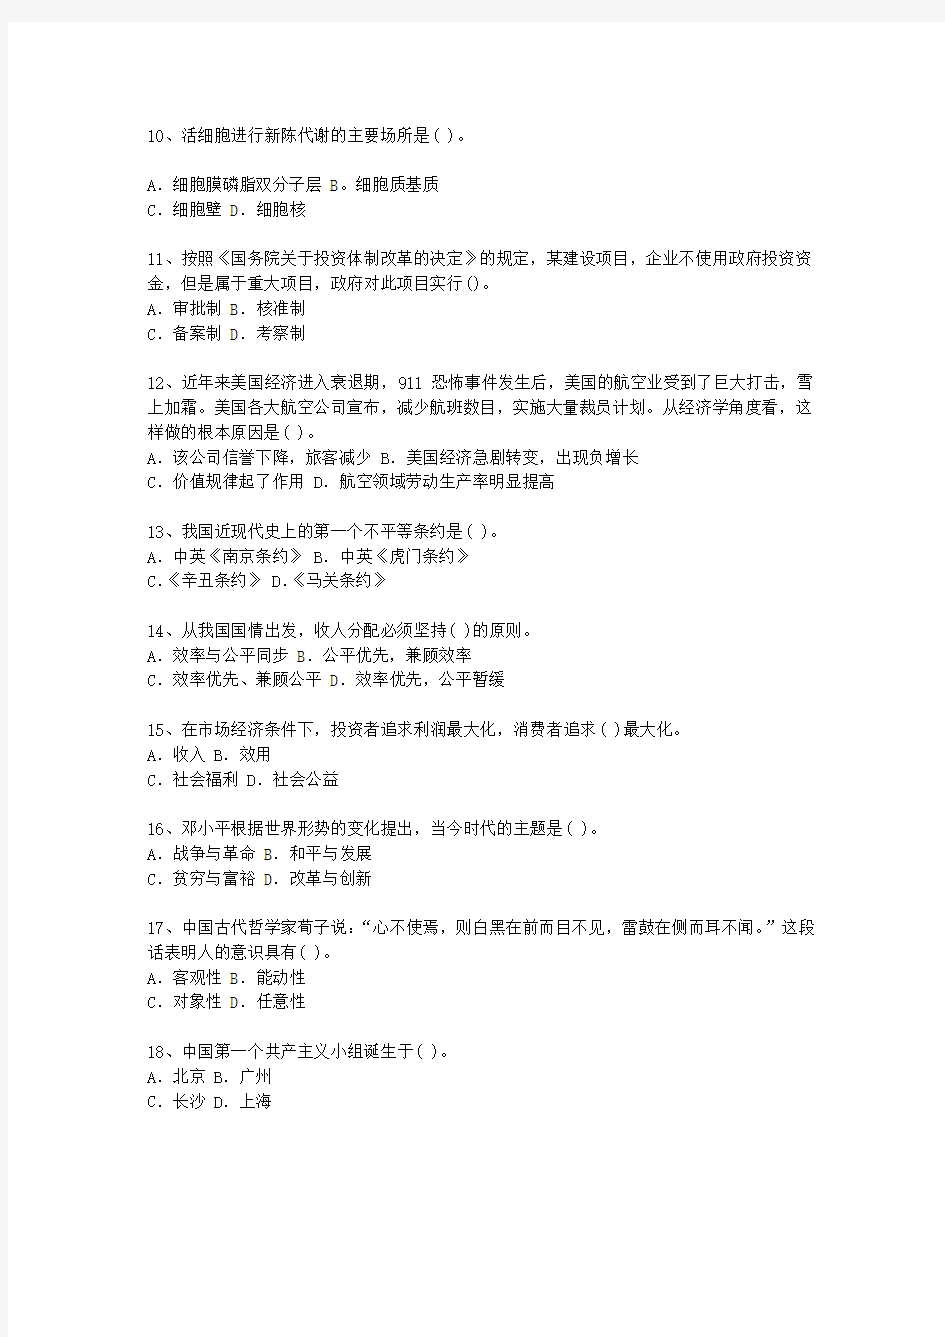 2015江西省最新公开选拔镇副科级领导干部考试答题技巧